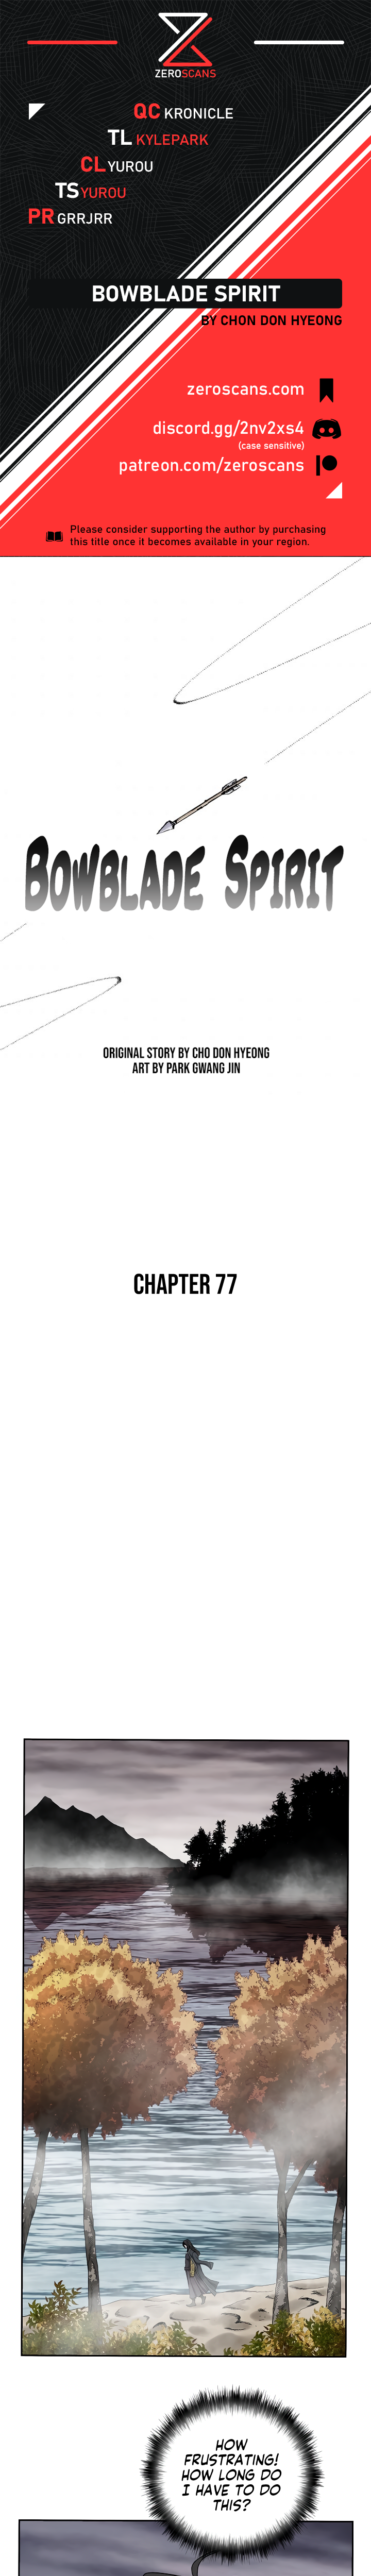 Bowblade Spirit - Chapter 7204 - Image 1